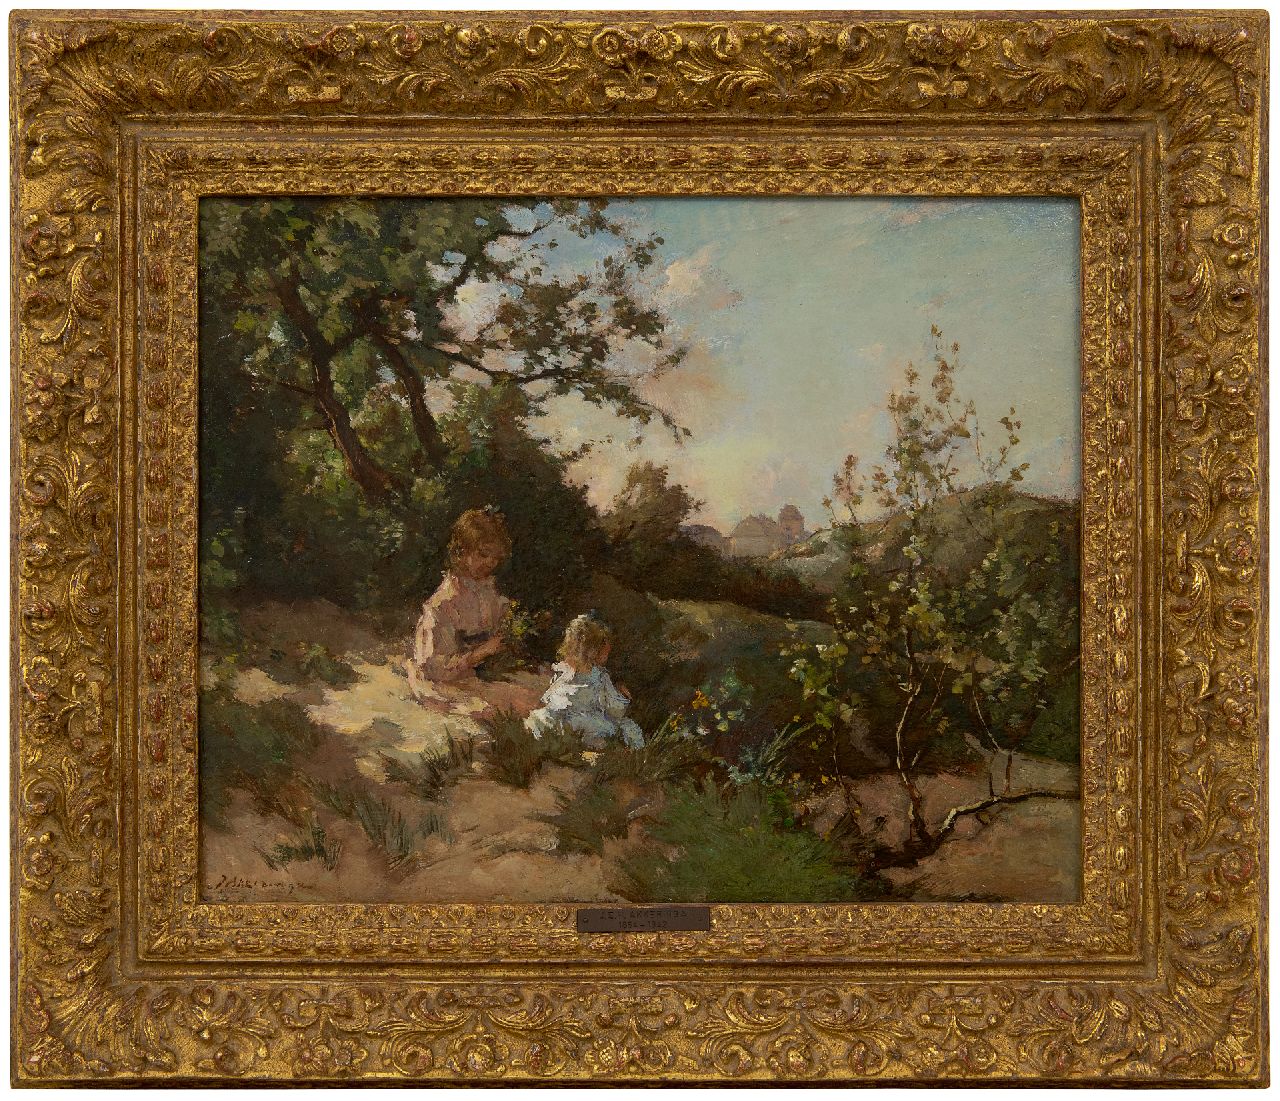 Akkeringa J.E.H.  | 'Johannes Evert' Hendrik Akkeringa | Schilderijen te koop aangeboden | Kinderen bloemen plukkend in de duinen, olieverf op paneel 31,9 x 39,4 cm, gesigneerd linksonder